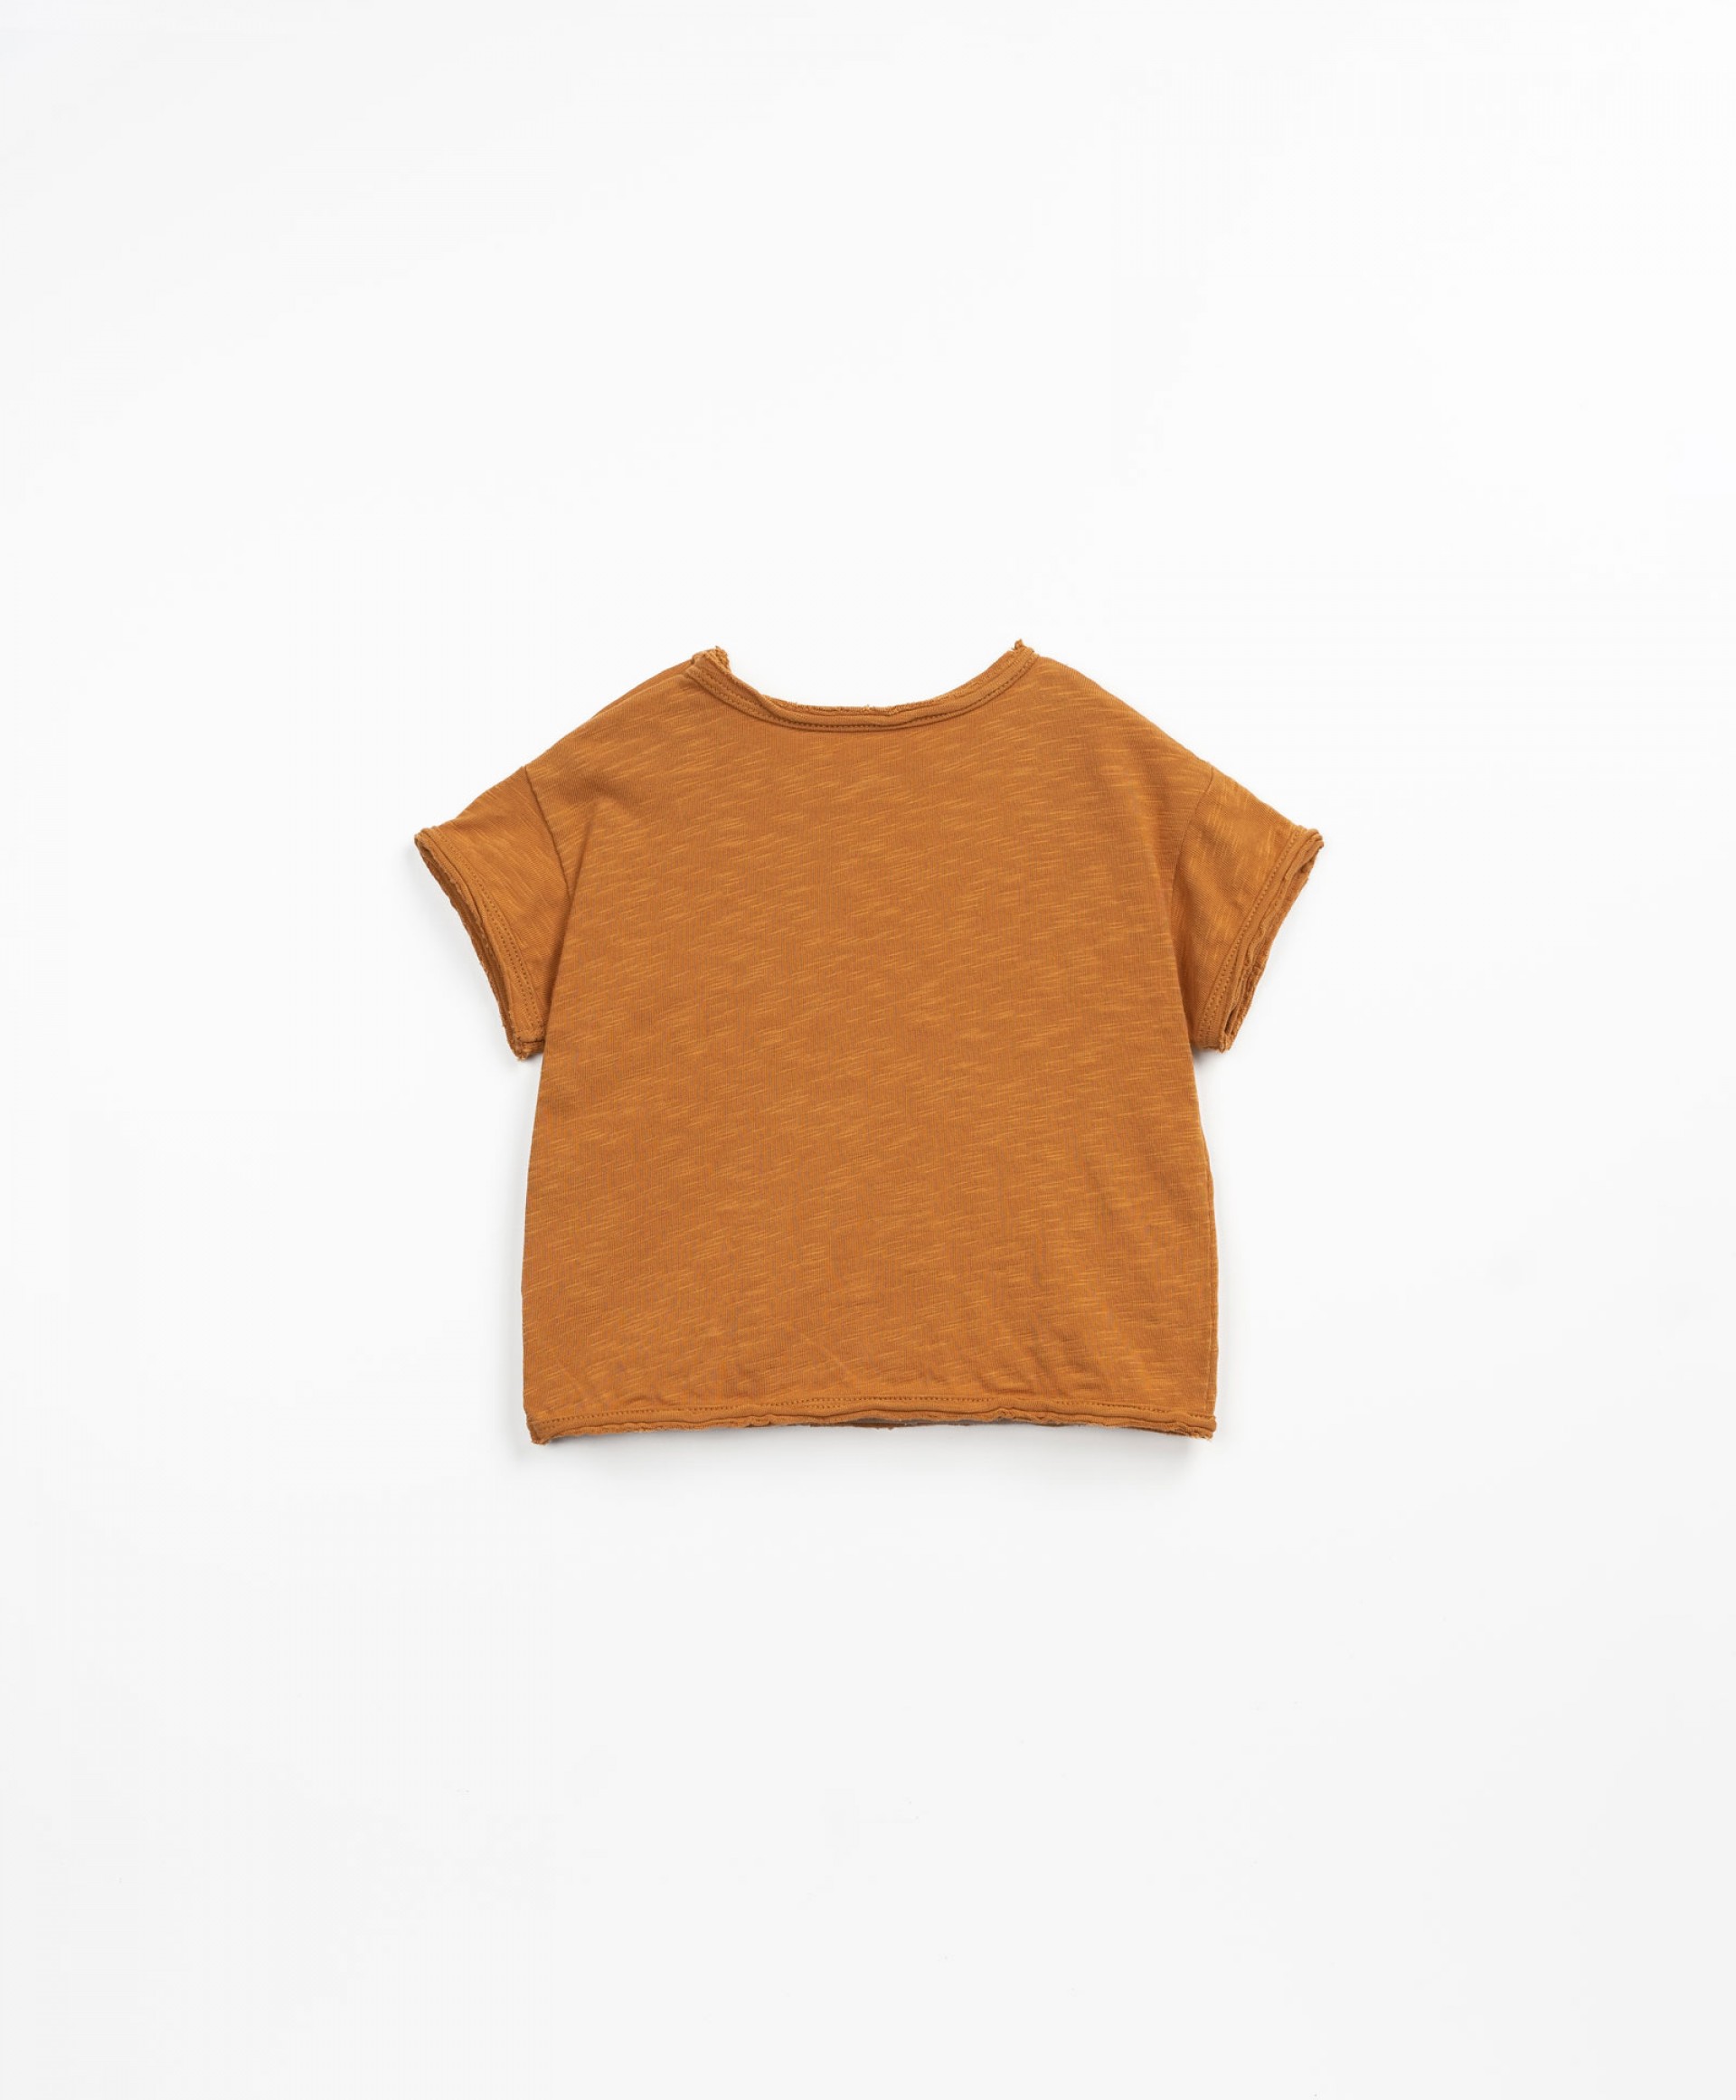 T-shirt with a kangaroo pocket | Textile Art